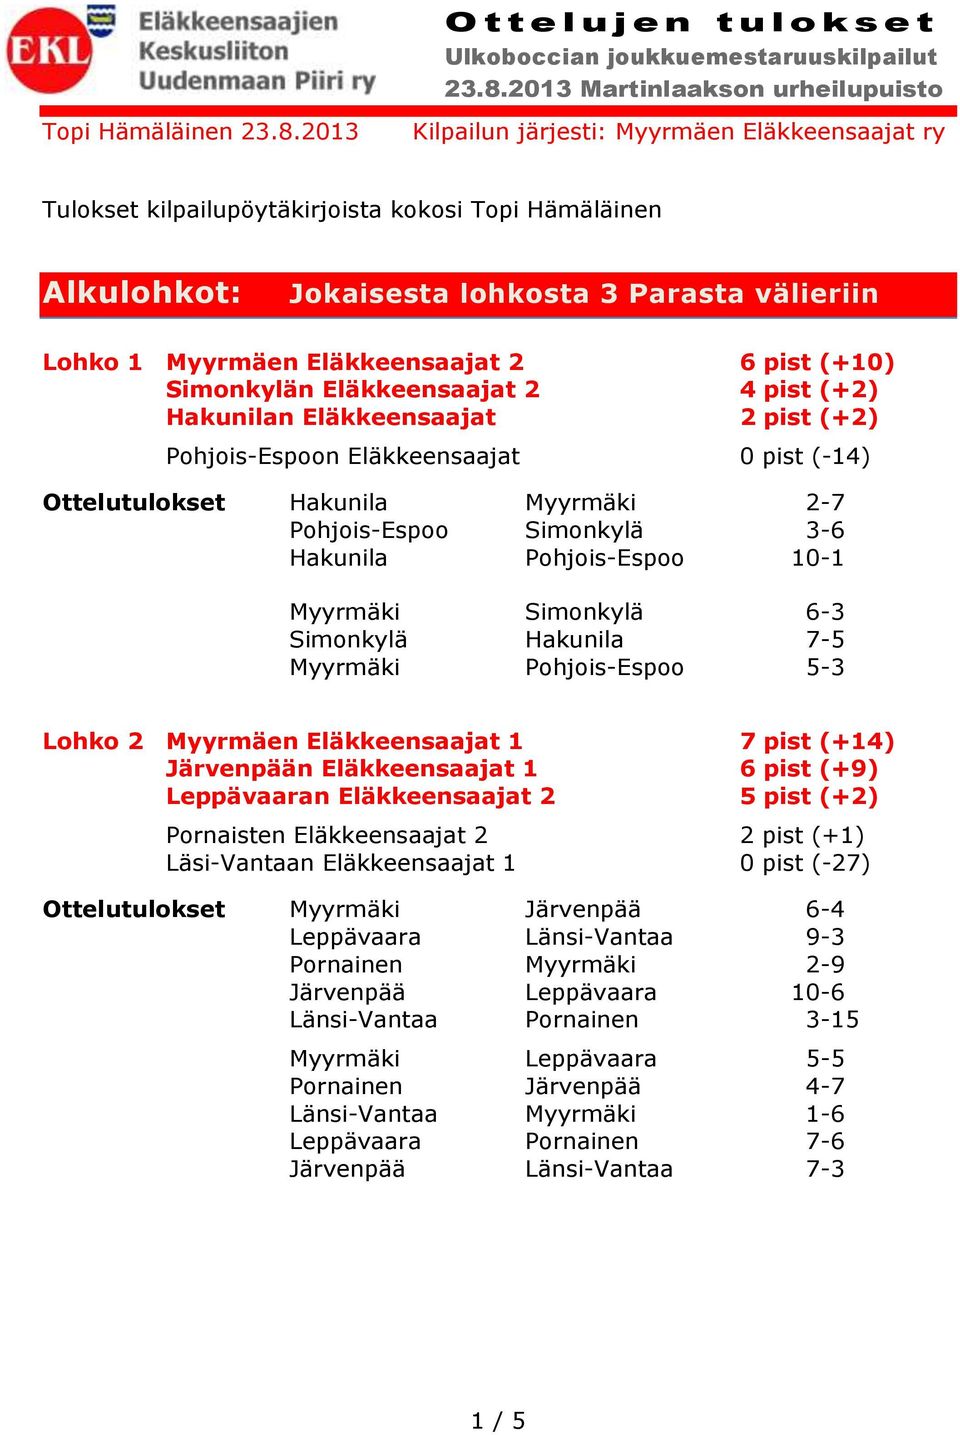 (+10) Simonkylän Eläkkeensaajat 2 4 pist (+2) Hakunilan Eläkkeensaajat 2 pist (+2) Pohjois-Espoon Eläkkeensaajat 0 pist (-14) Ottelutulokset Hakunila Myyrmäki 2-7 Pohjois-Espoo Simonkylä 3-6 Hakunila